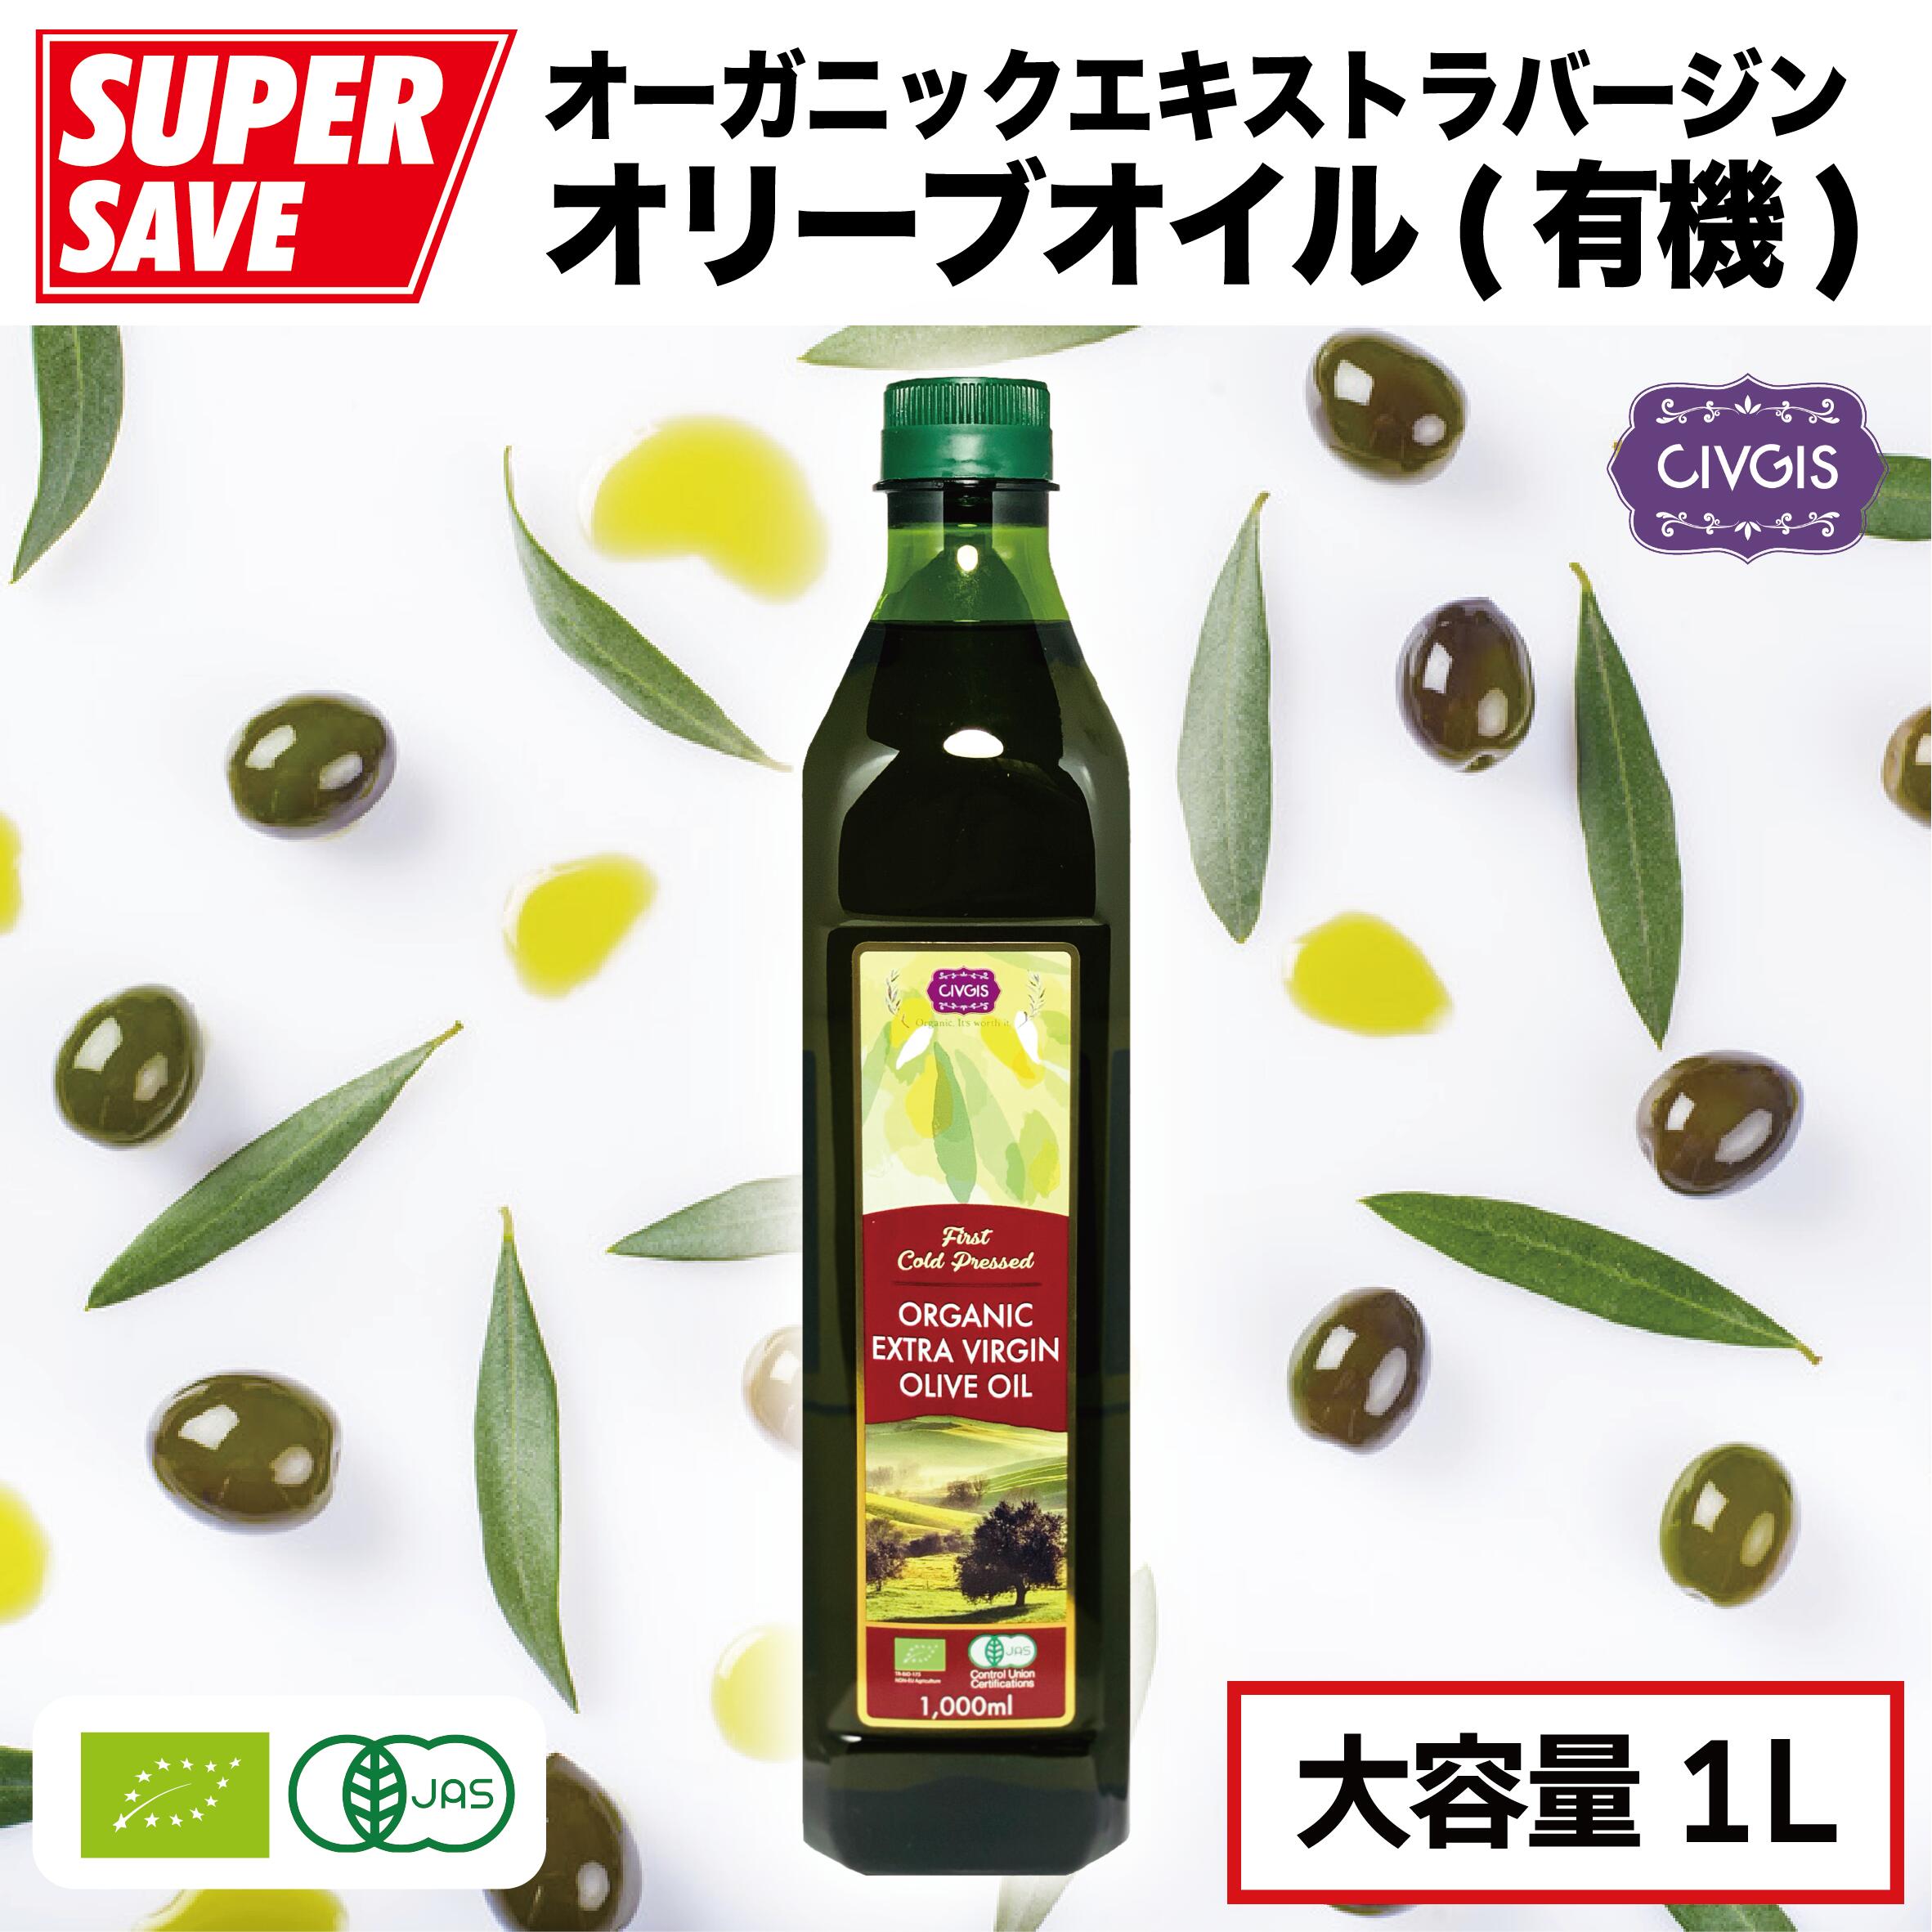 オリーブオイル オーガニック エキストラバージン【大容量1リットル】ペットボトル入り【有機JAS認定・EUオーガニック】Organic Extra Virgin Olive Oil 1,000ml『CIVGIS チブギス』